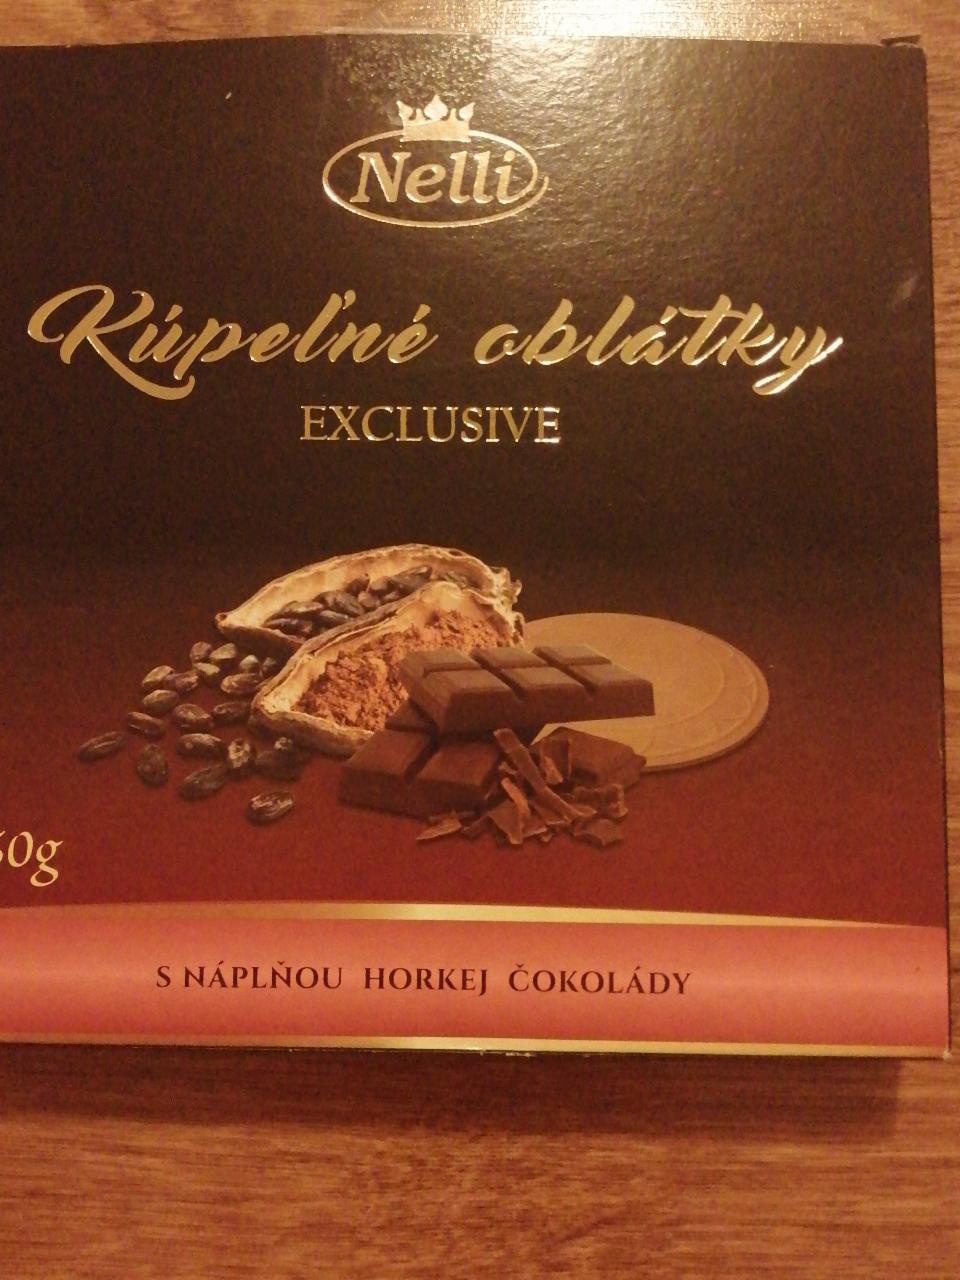 Fotografie - Kúpeľné oblátky Exclusive s náplňou horkej čokolády Nelli